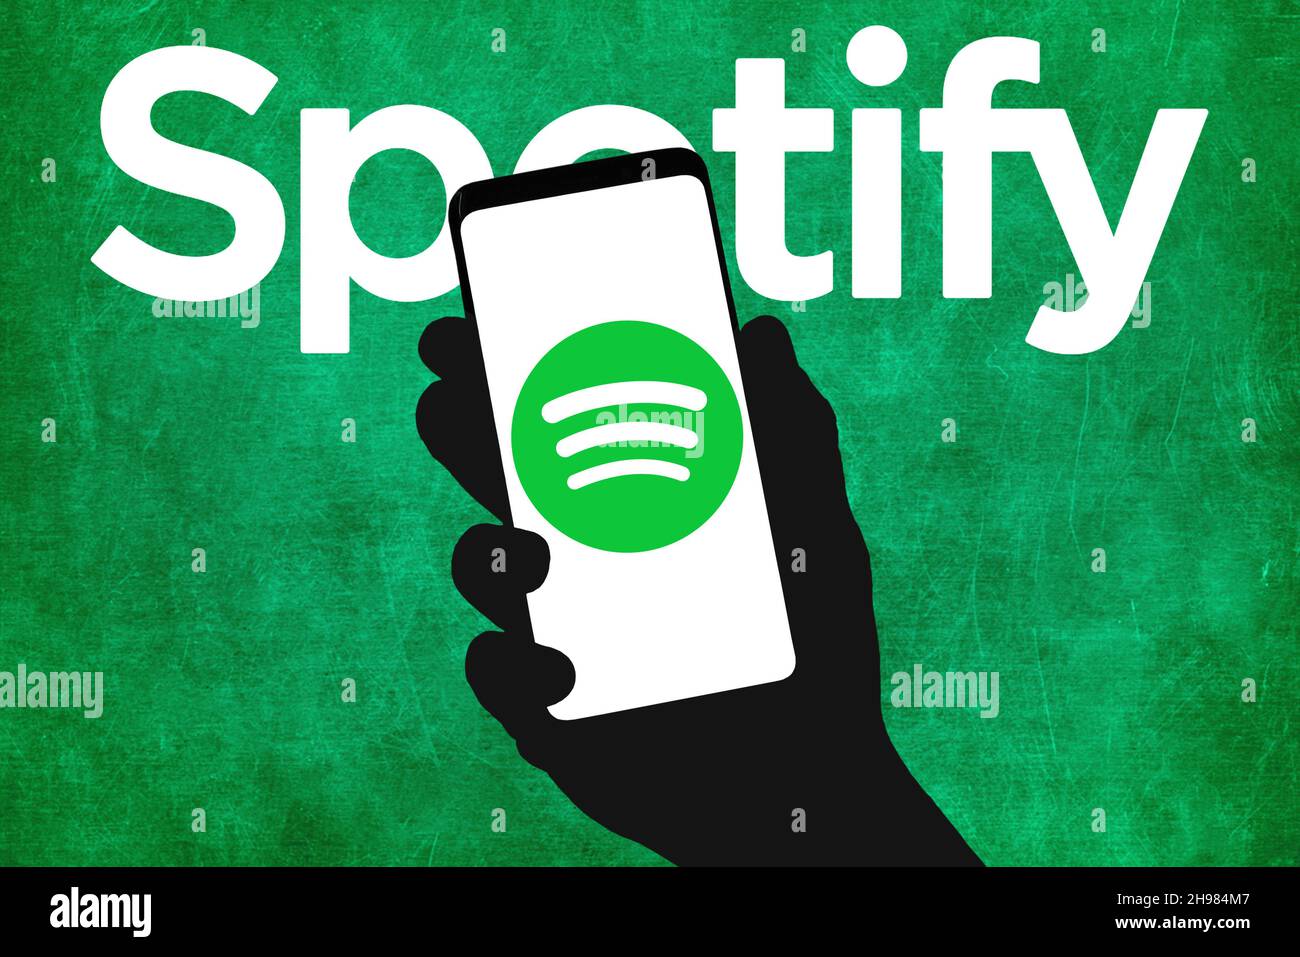 Spotify audio streaming company Stock Photo